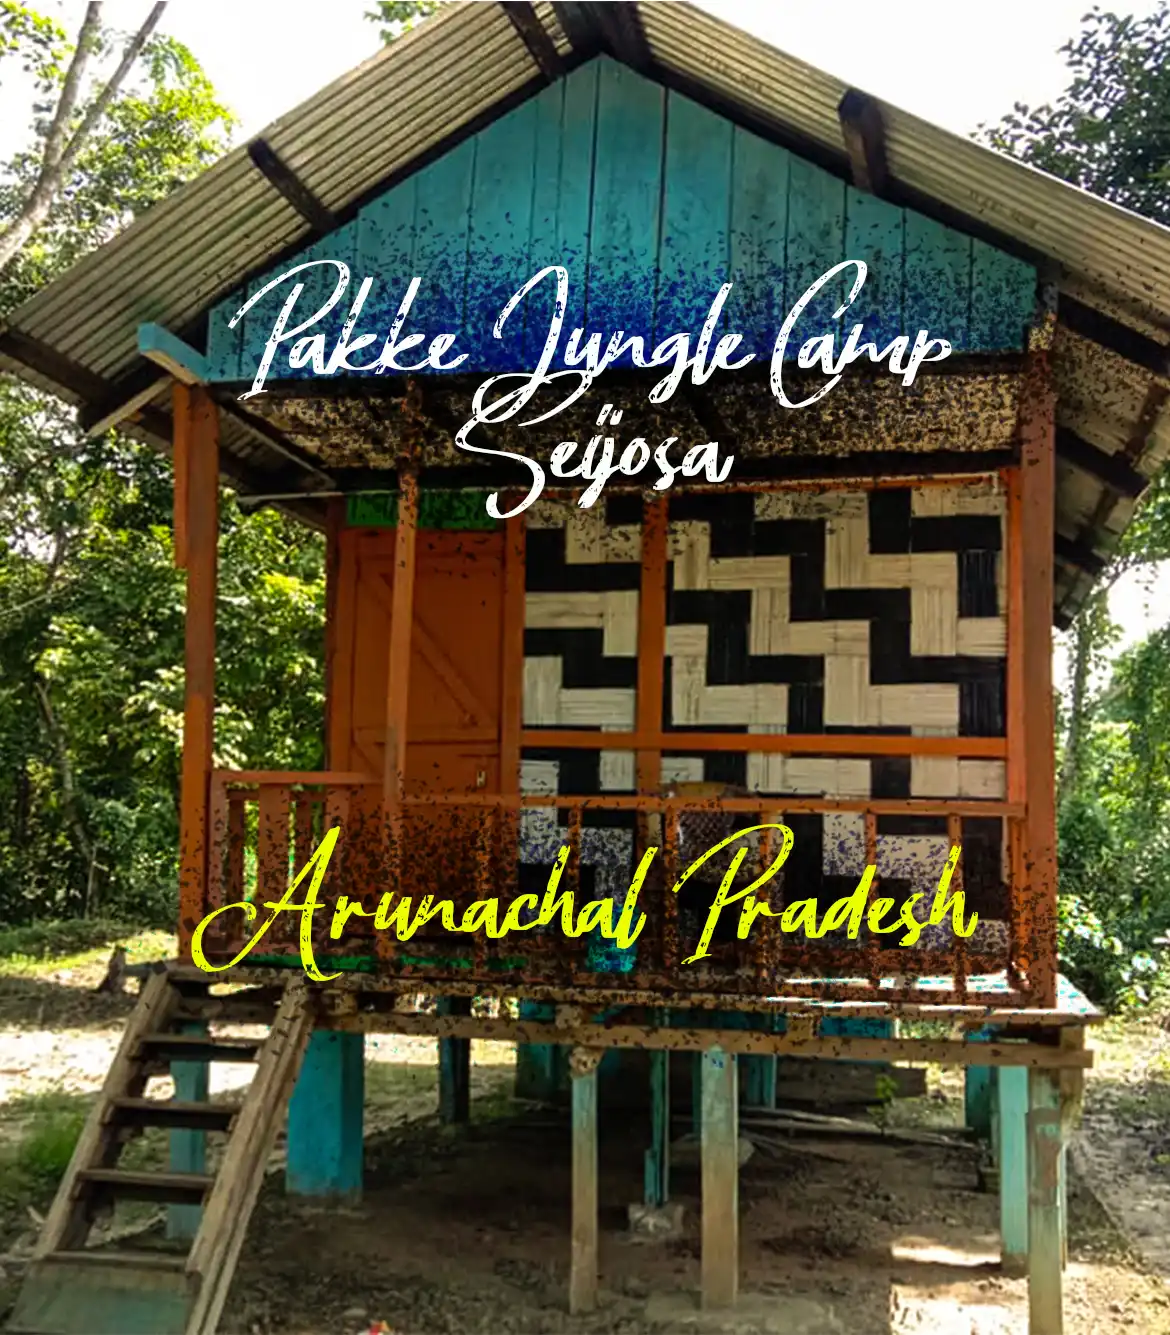 Pakke Jungle Camp Seijosa